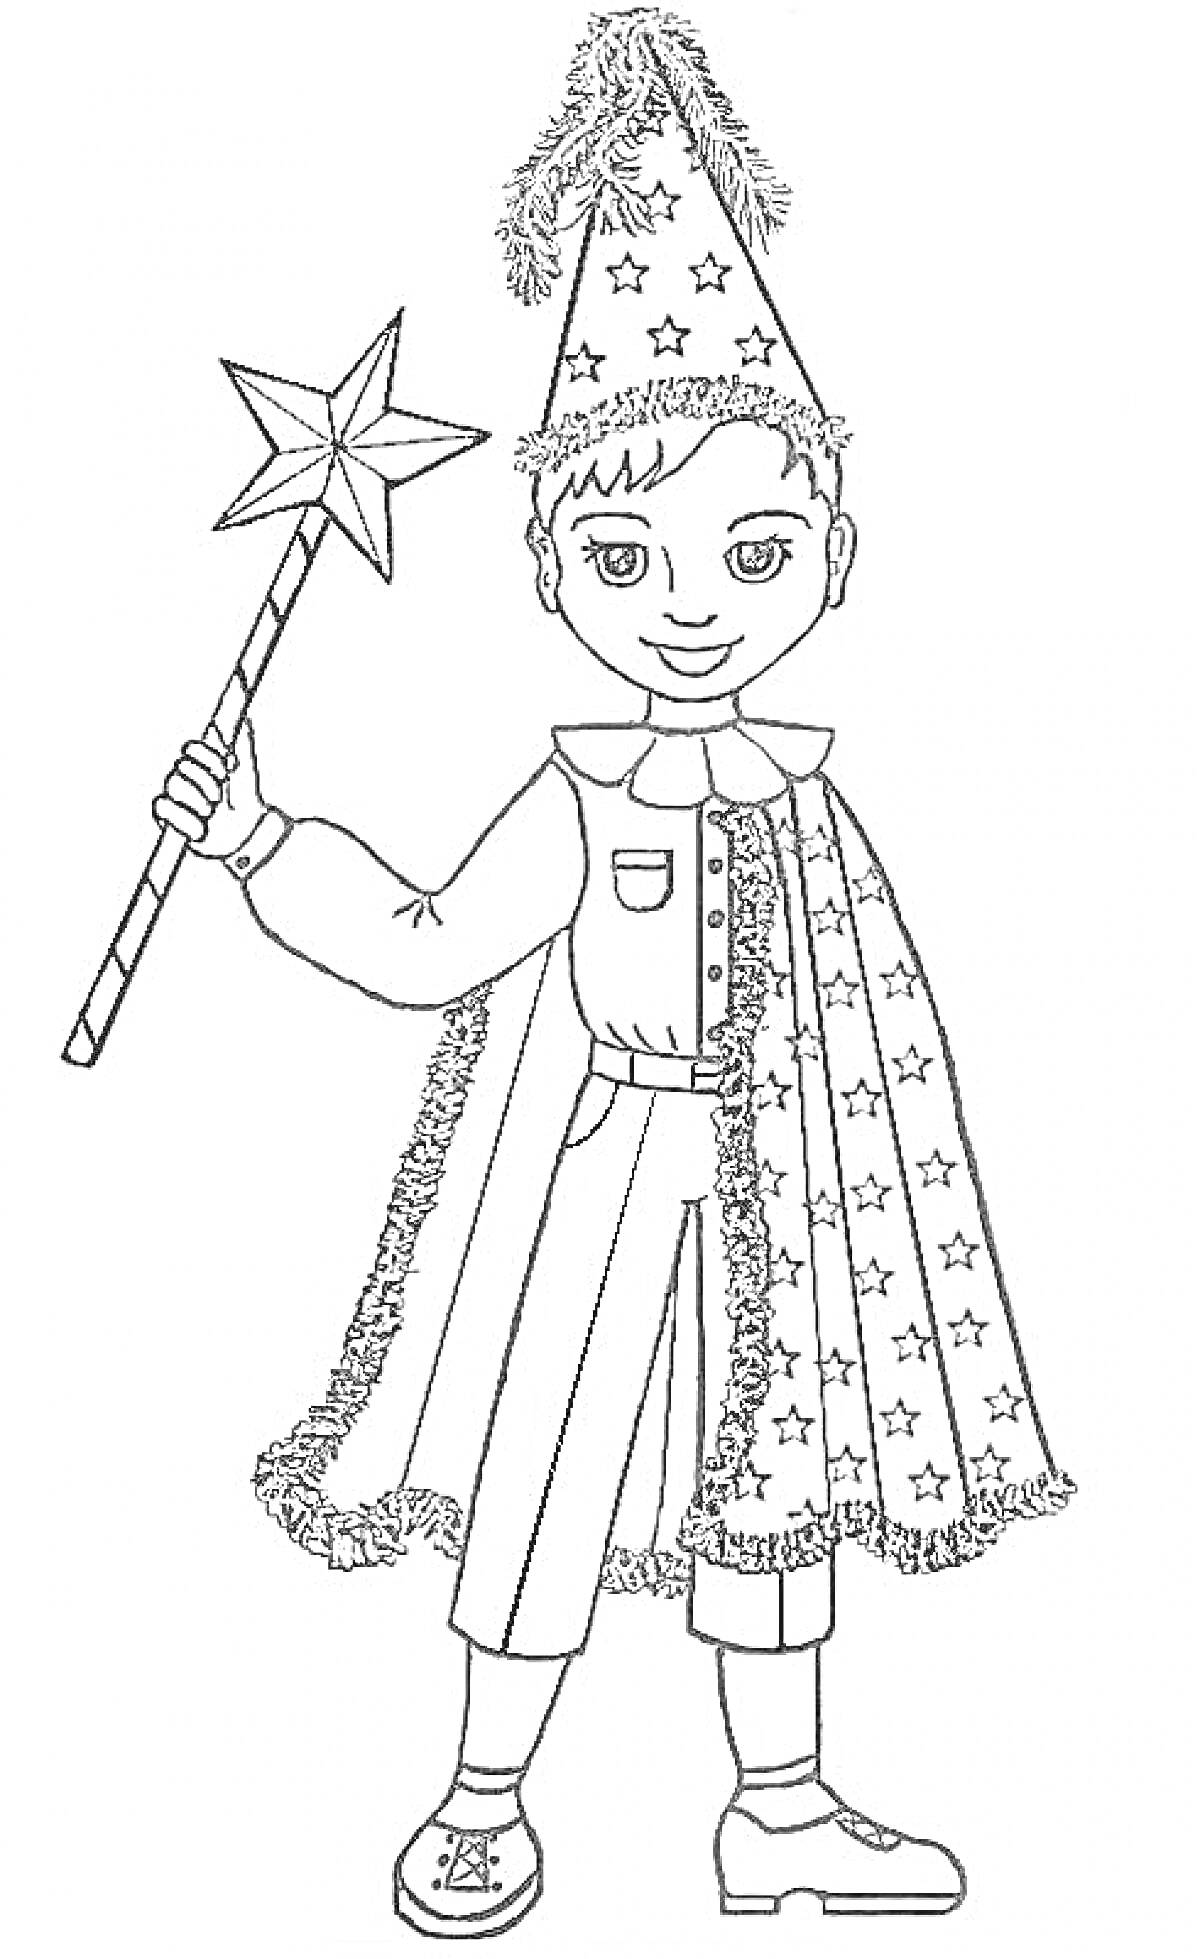 РаскраскаМальчик в костюме волшебника с накидкой и колпаком со звёздами, держащий волшебную палочку